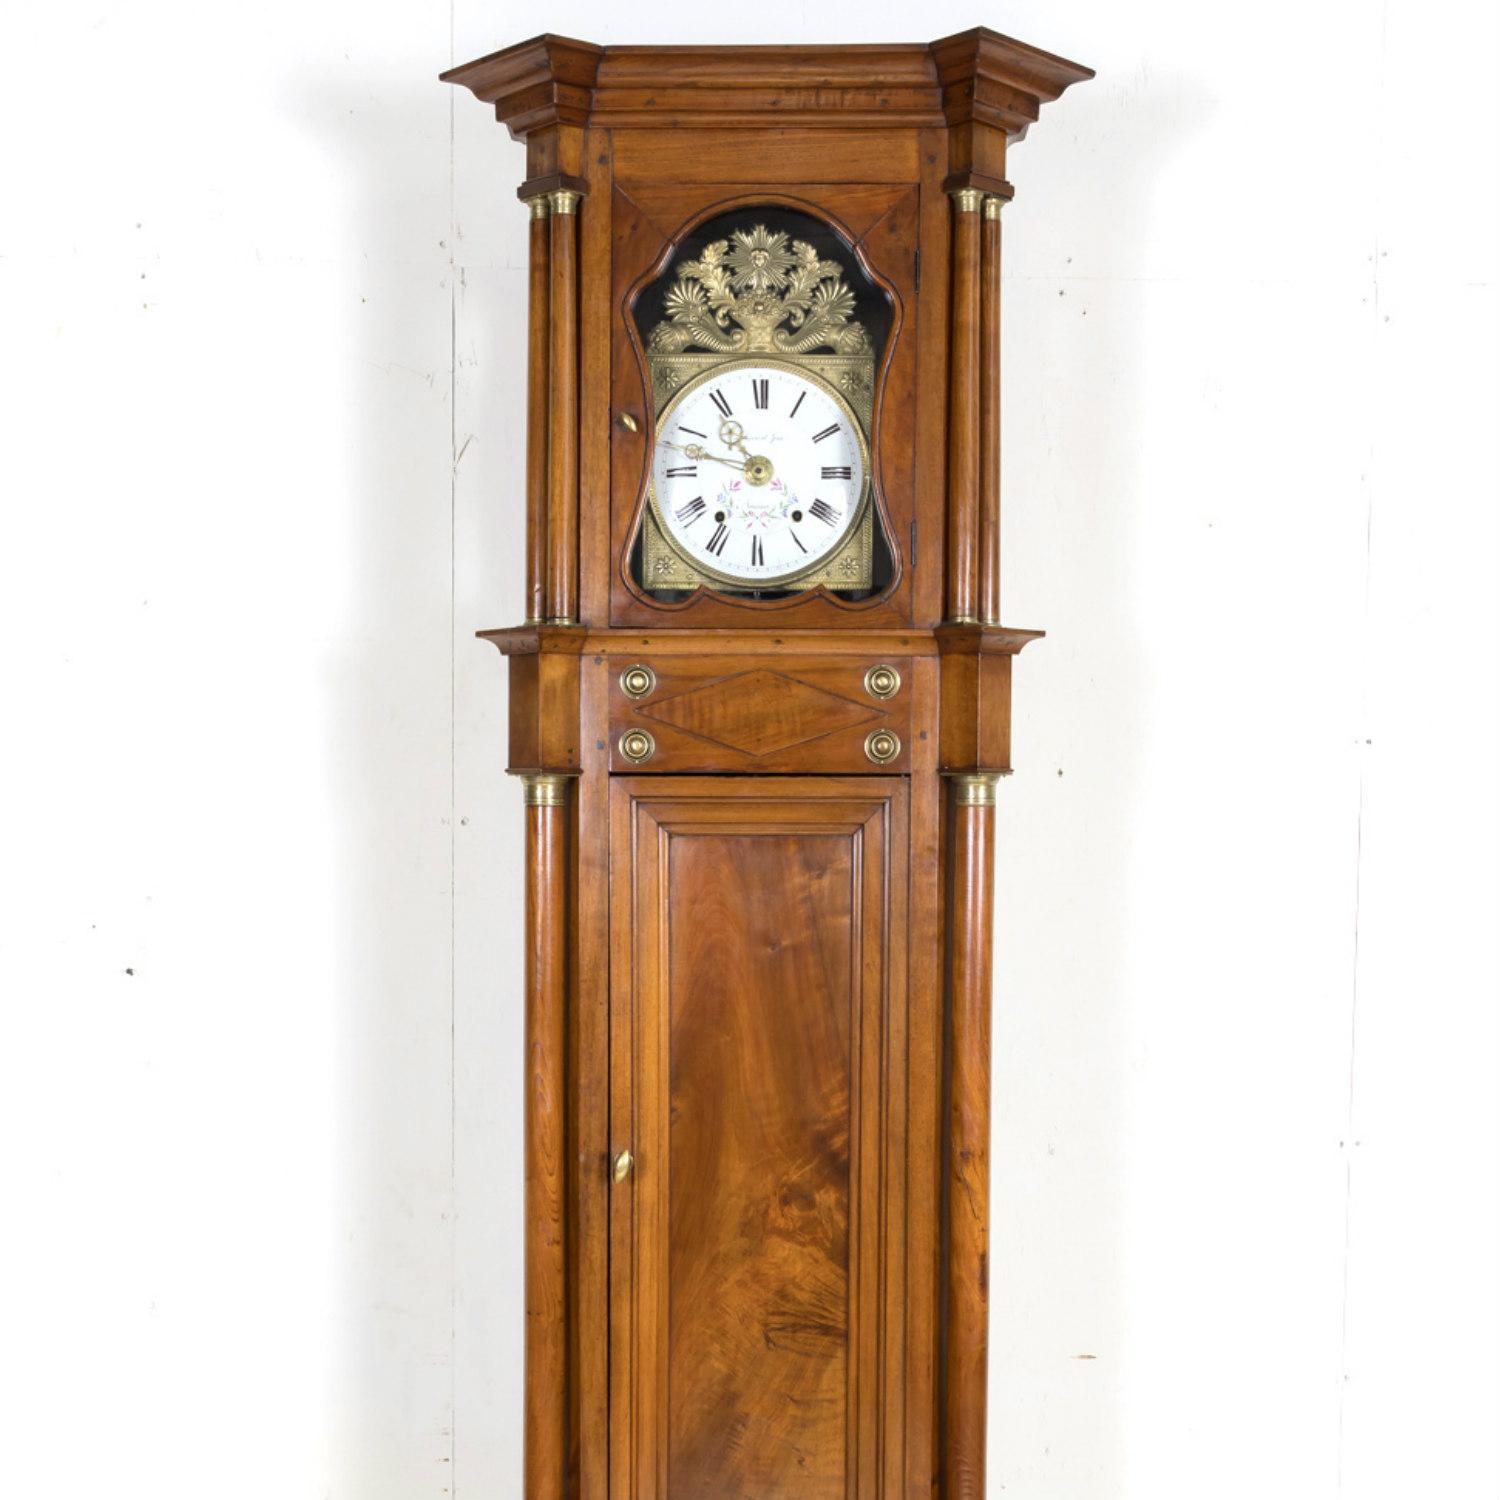 Superbe horloge de château du début du 19e siècle, d'époque Empire français, avec mouvement comtoise à huit jours, fabriquée à la main en noyer massif, vers 1815, entièrement d'origine. Cette grande et belle horloge de château à long buffet, dont la